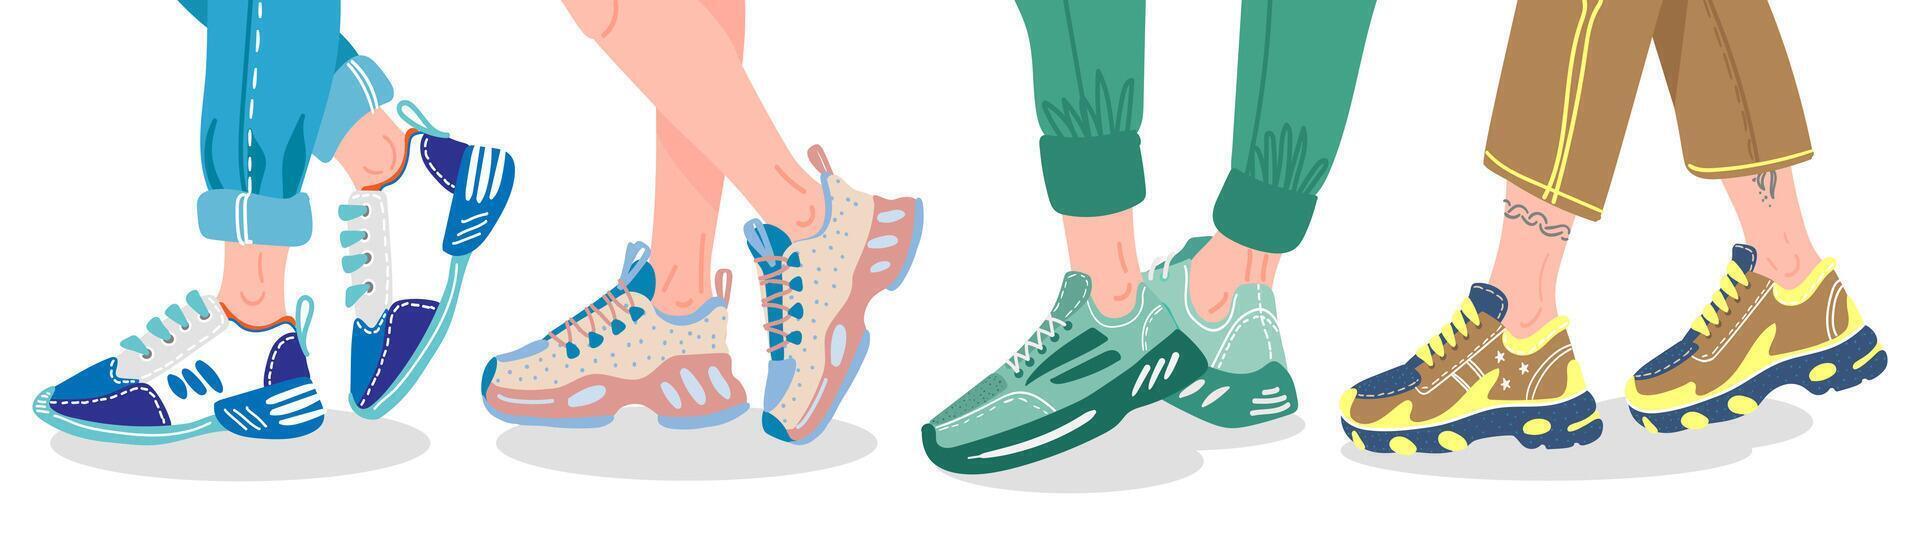 ben i sneakers. kvinna eller manlig ben bär modern sneakers, människor ben i mode utbildare, eleganta sport Skodon vektor illustration